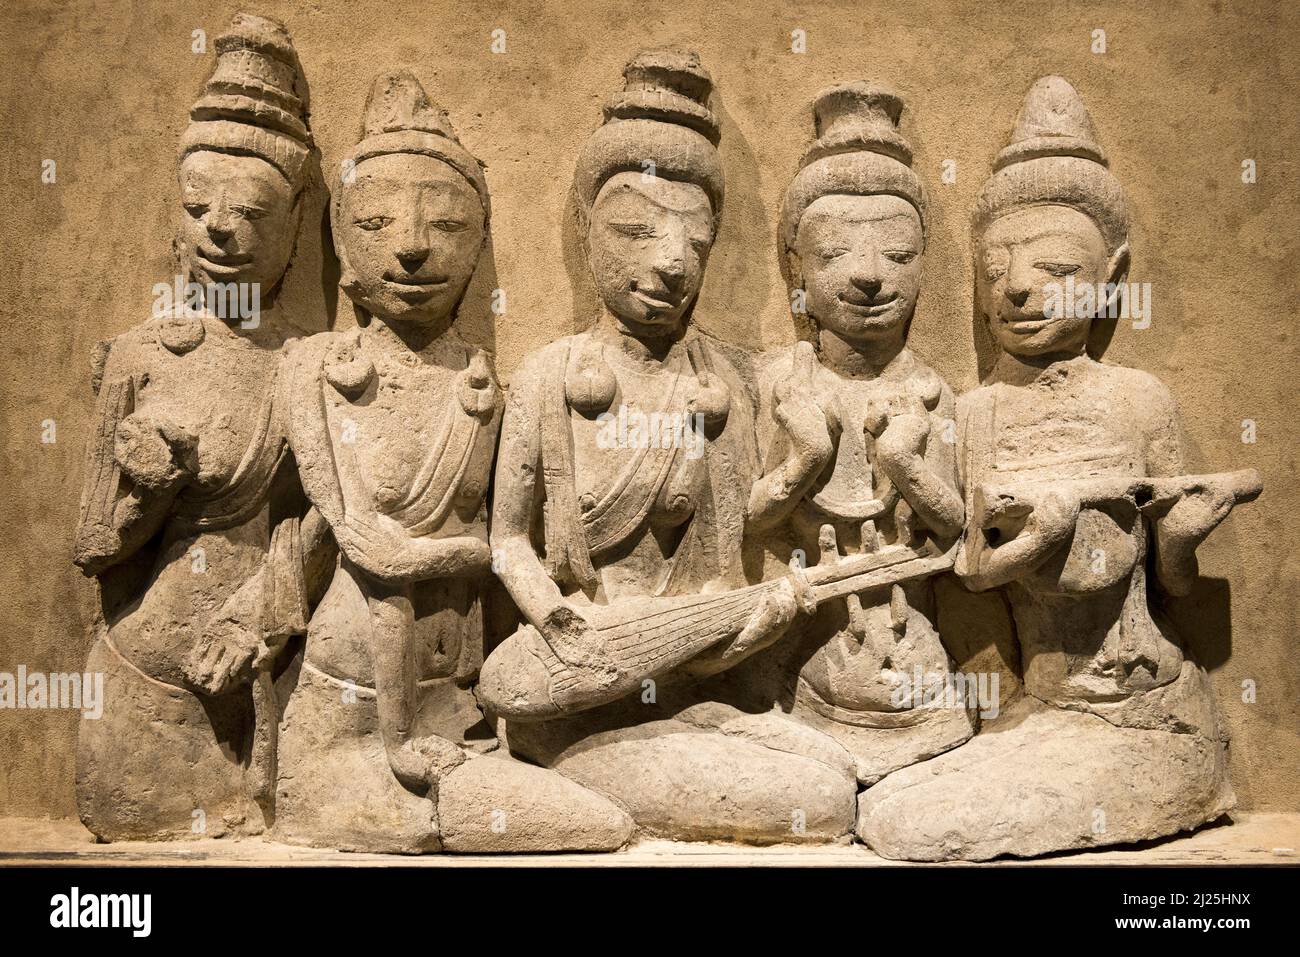 Bas relief du site archéologique de Khu Bua. 650-700 C.E., la culture mon Dvaravati, Musée national, Bangkok, Thaïlande Banque D'Images